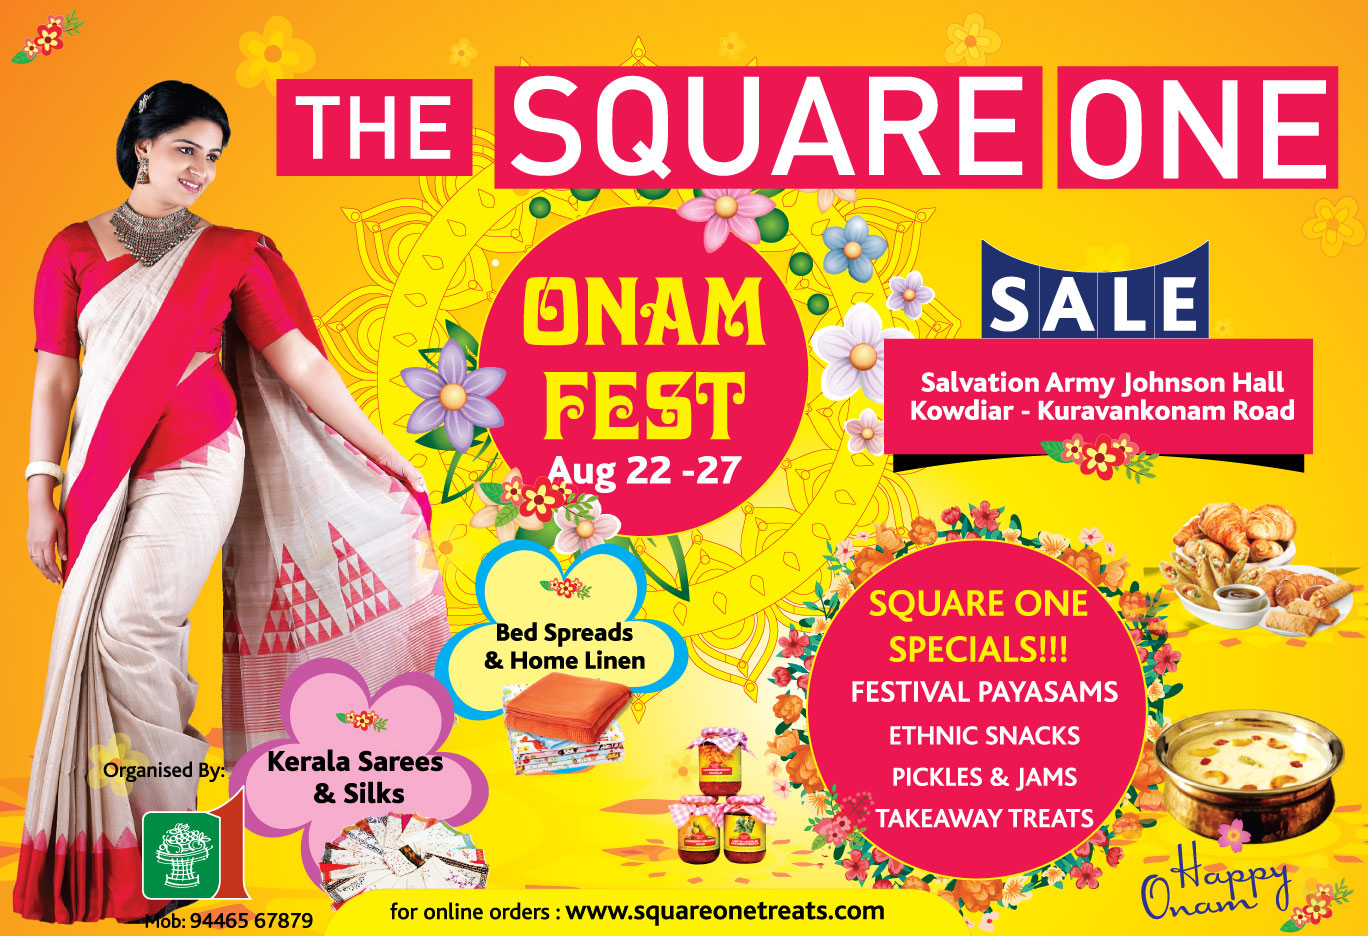 Square One Onam Fest 2015